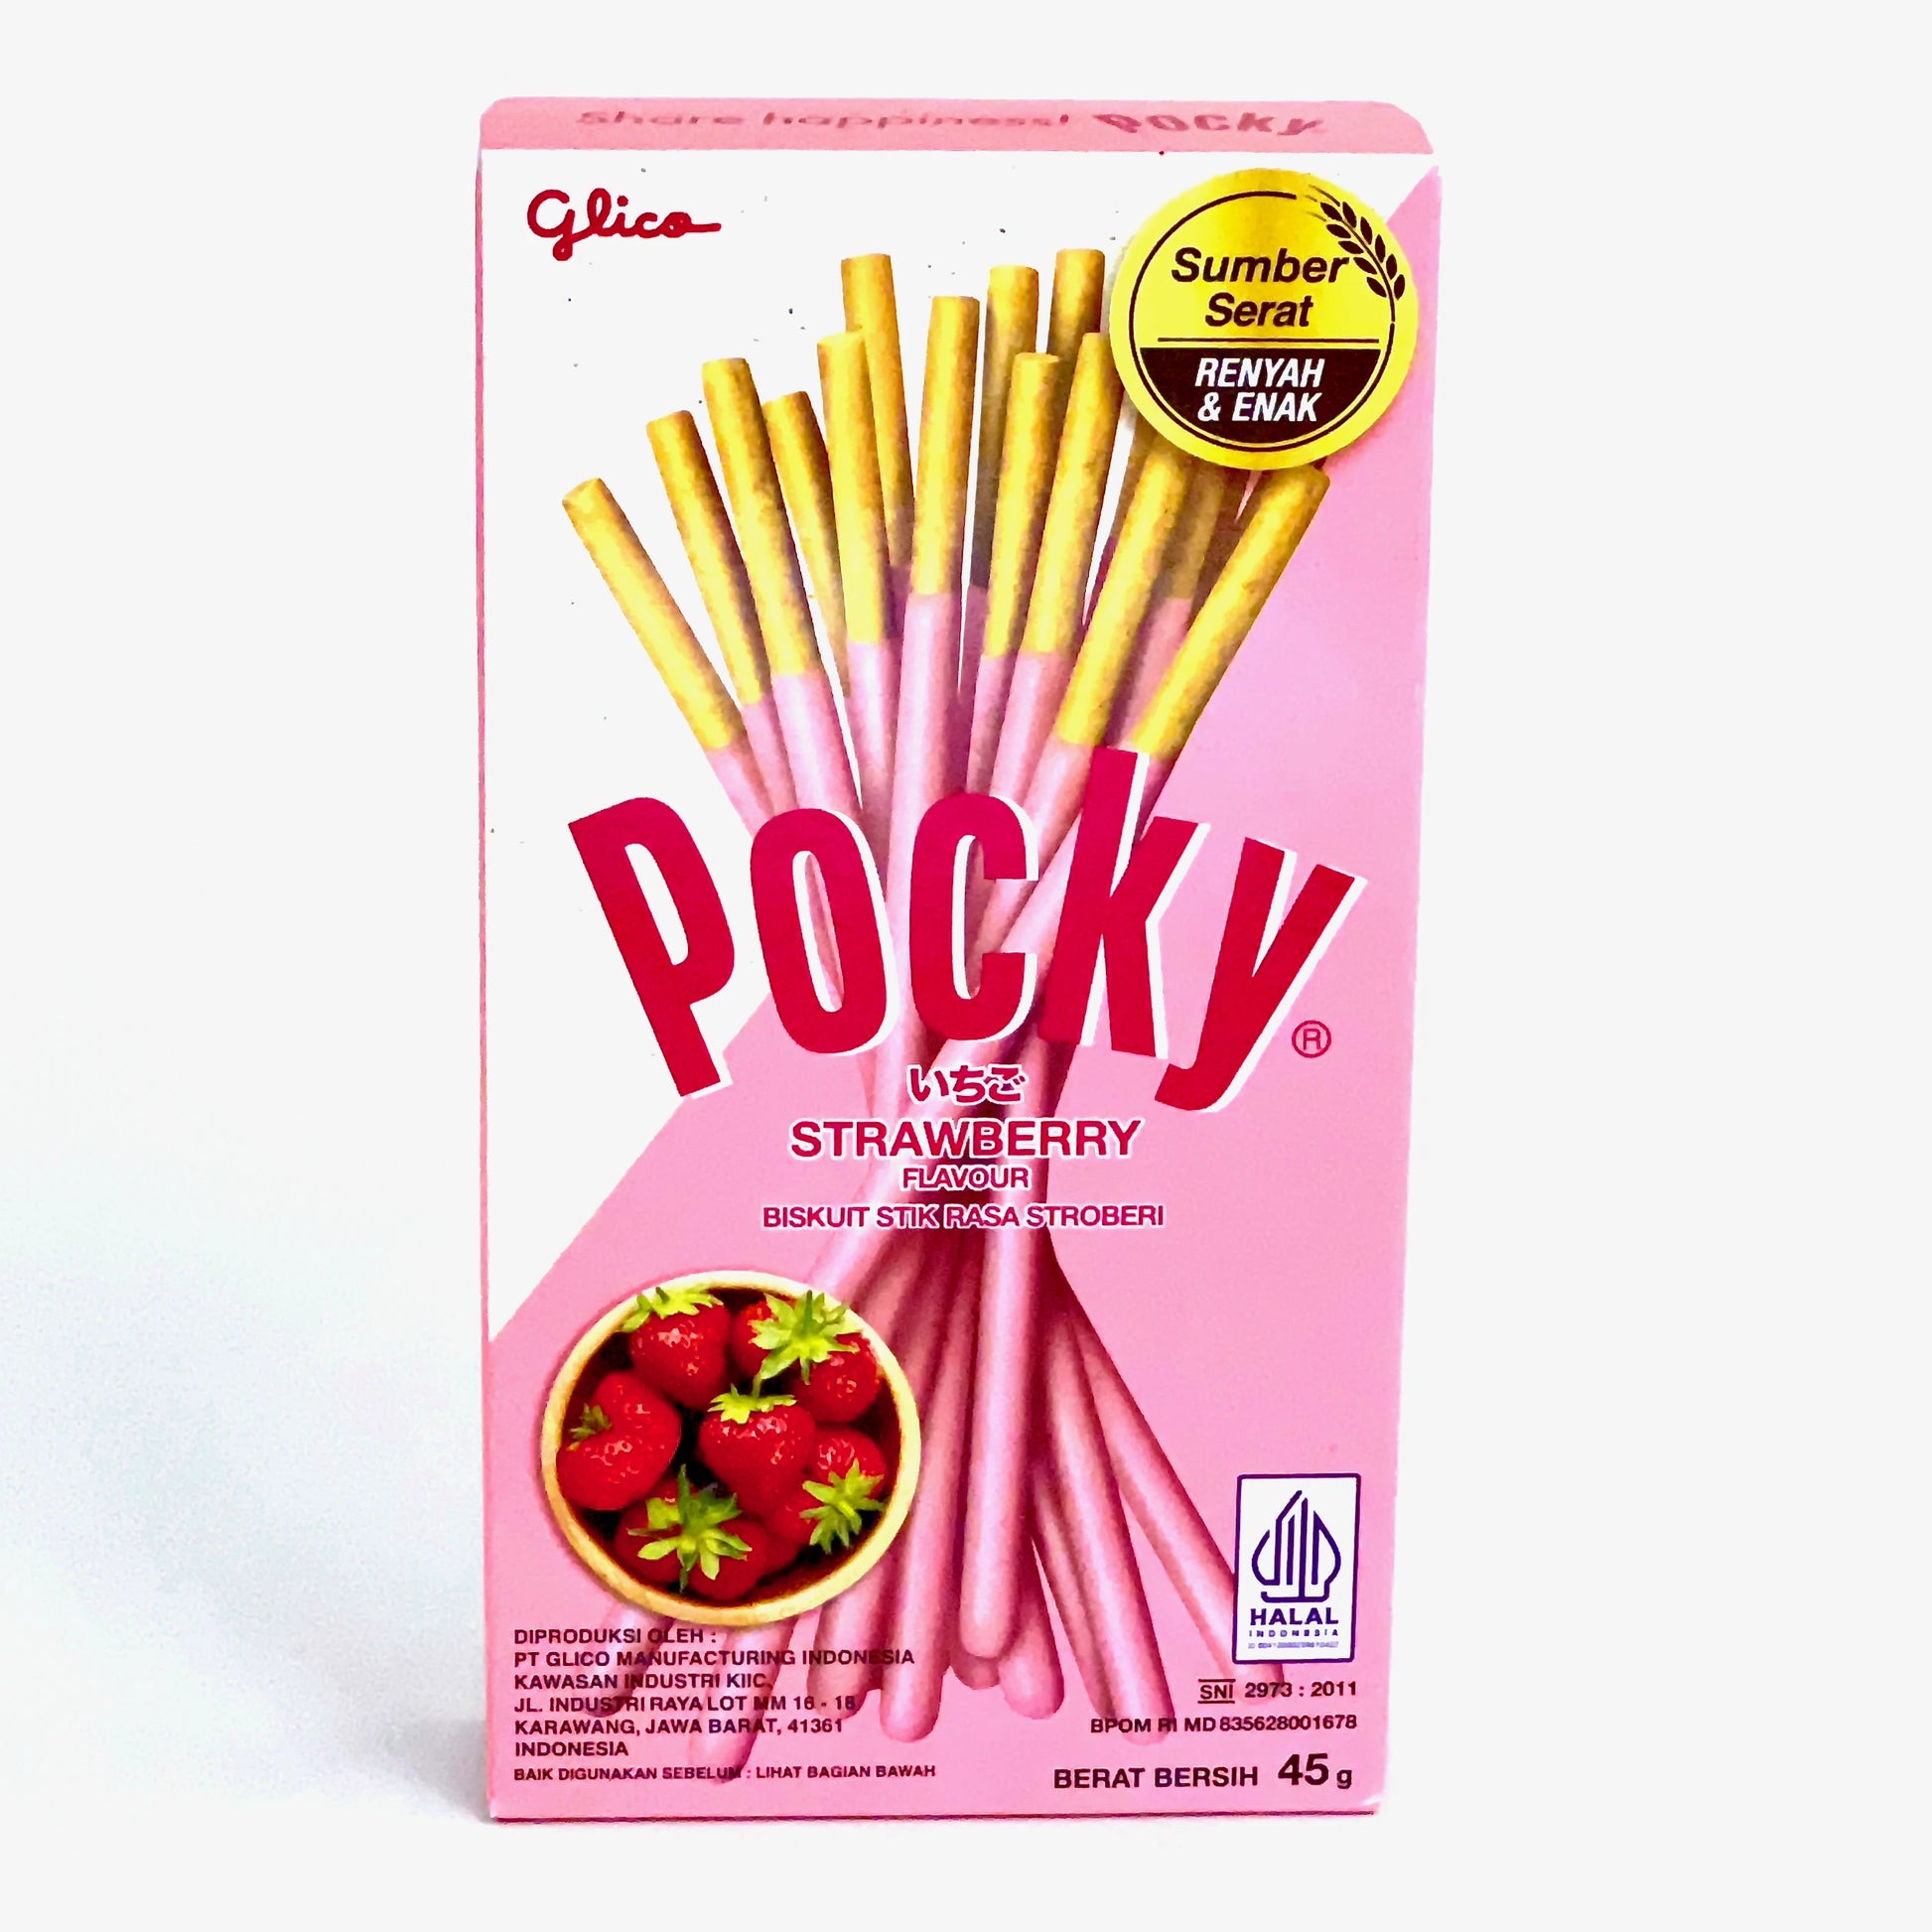 die knackigen Kekssticks mit Erddbeer Glasur der Marke Pocky